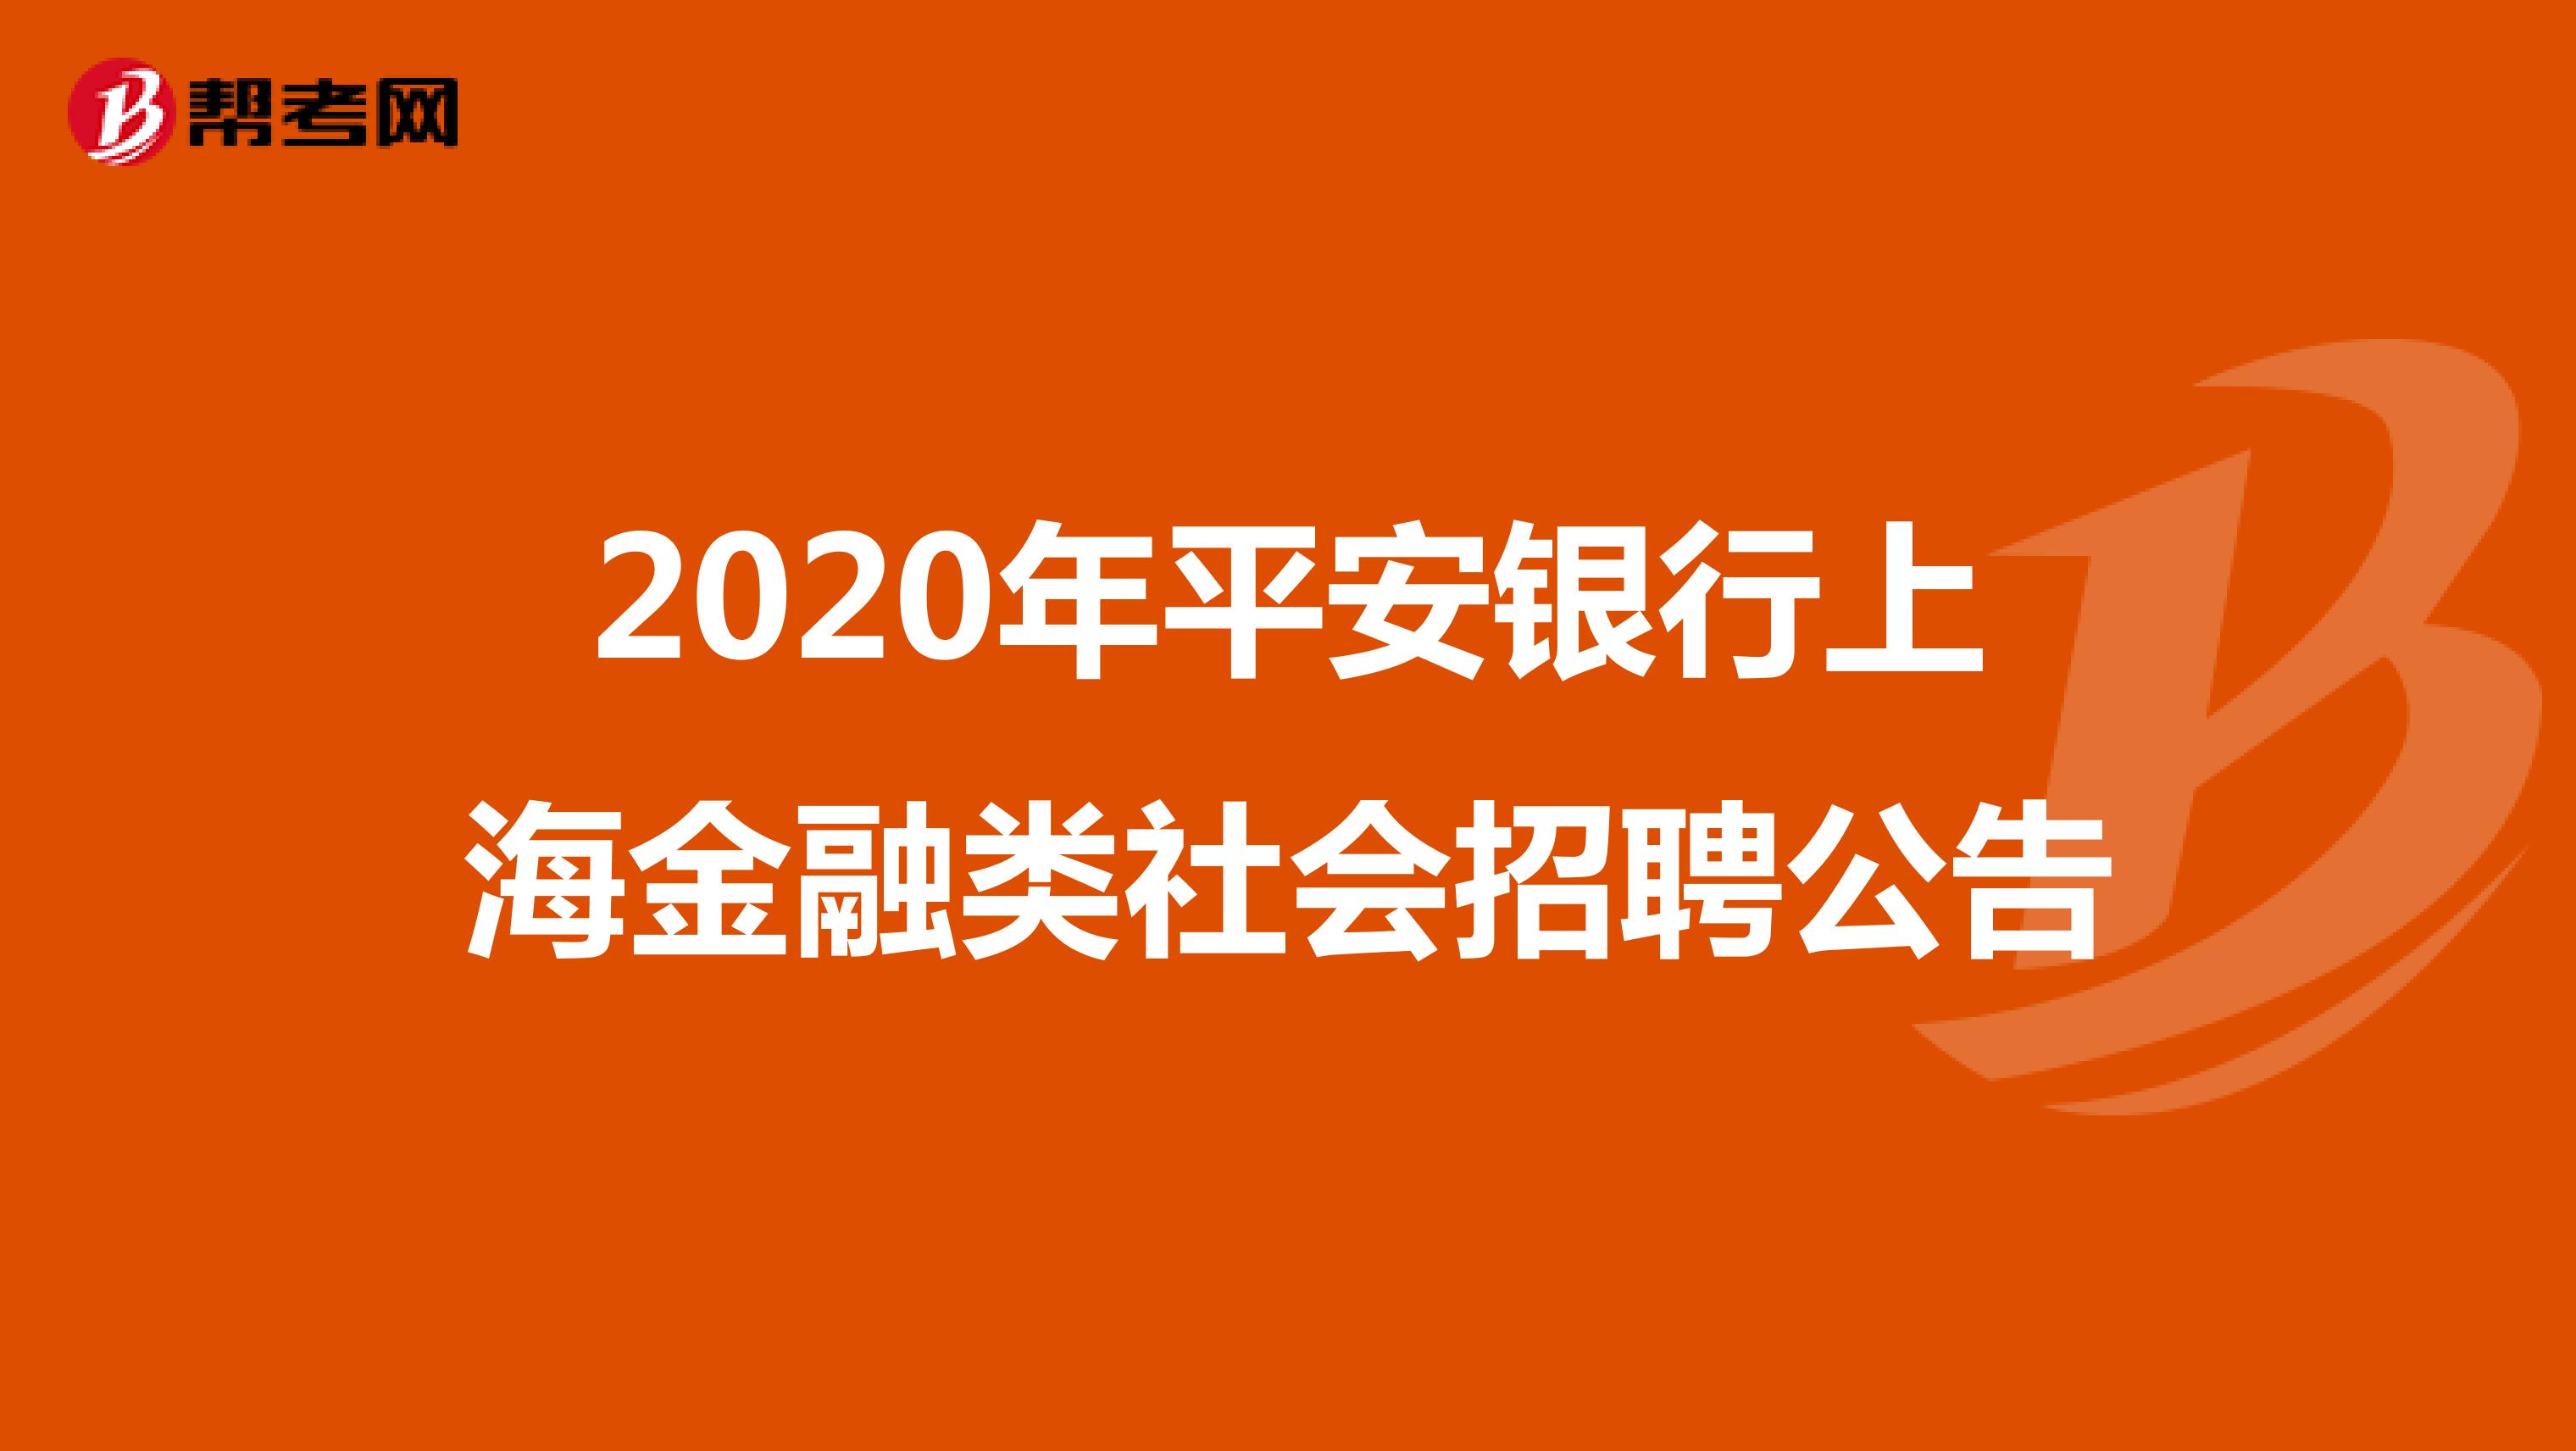 2020年平安银行上海金融类社会招聘公告